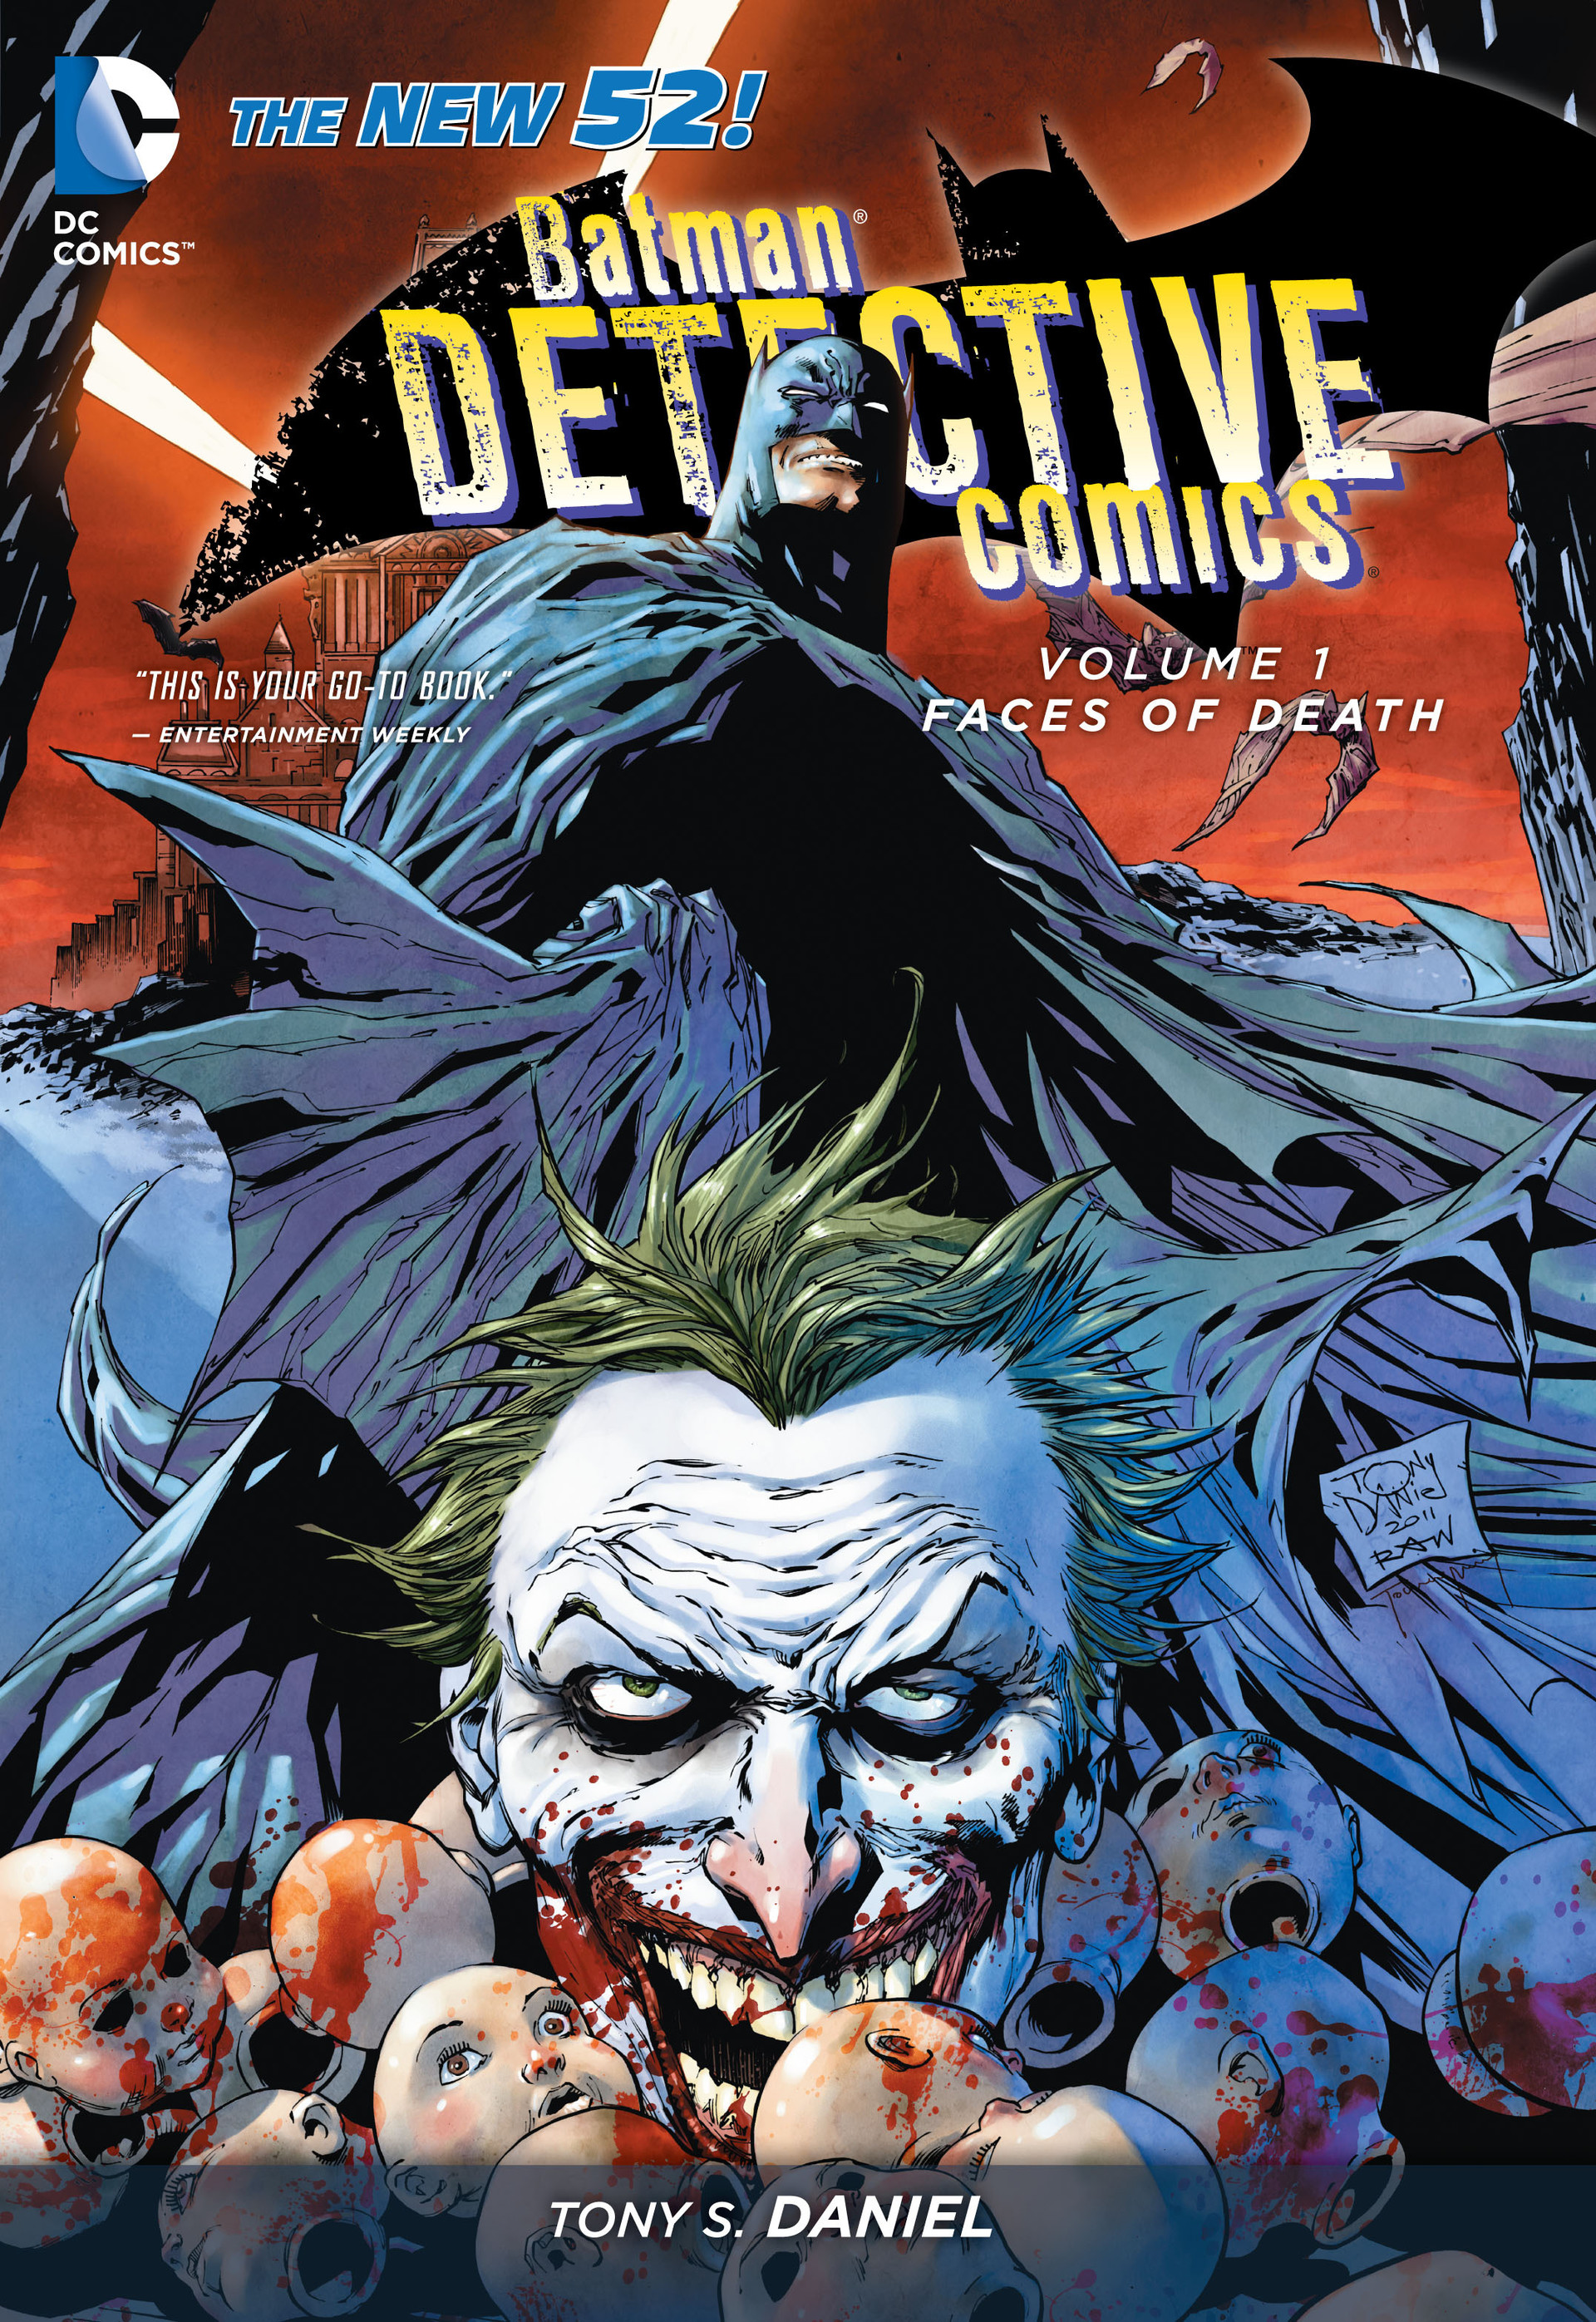 Read online Batman: Detective Comics comic -  Issue # TPB 1 - 1